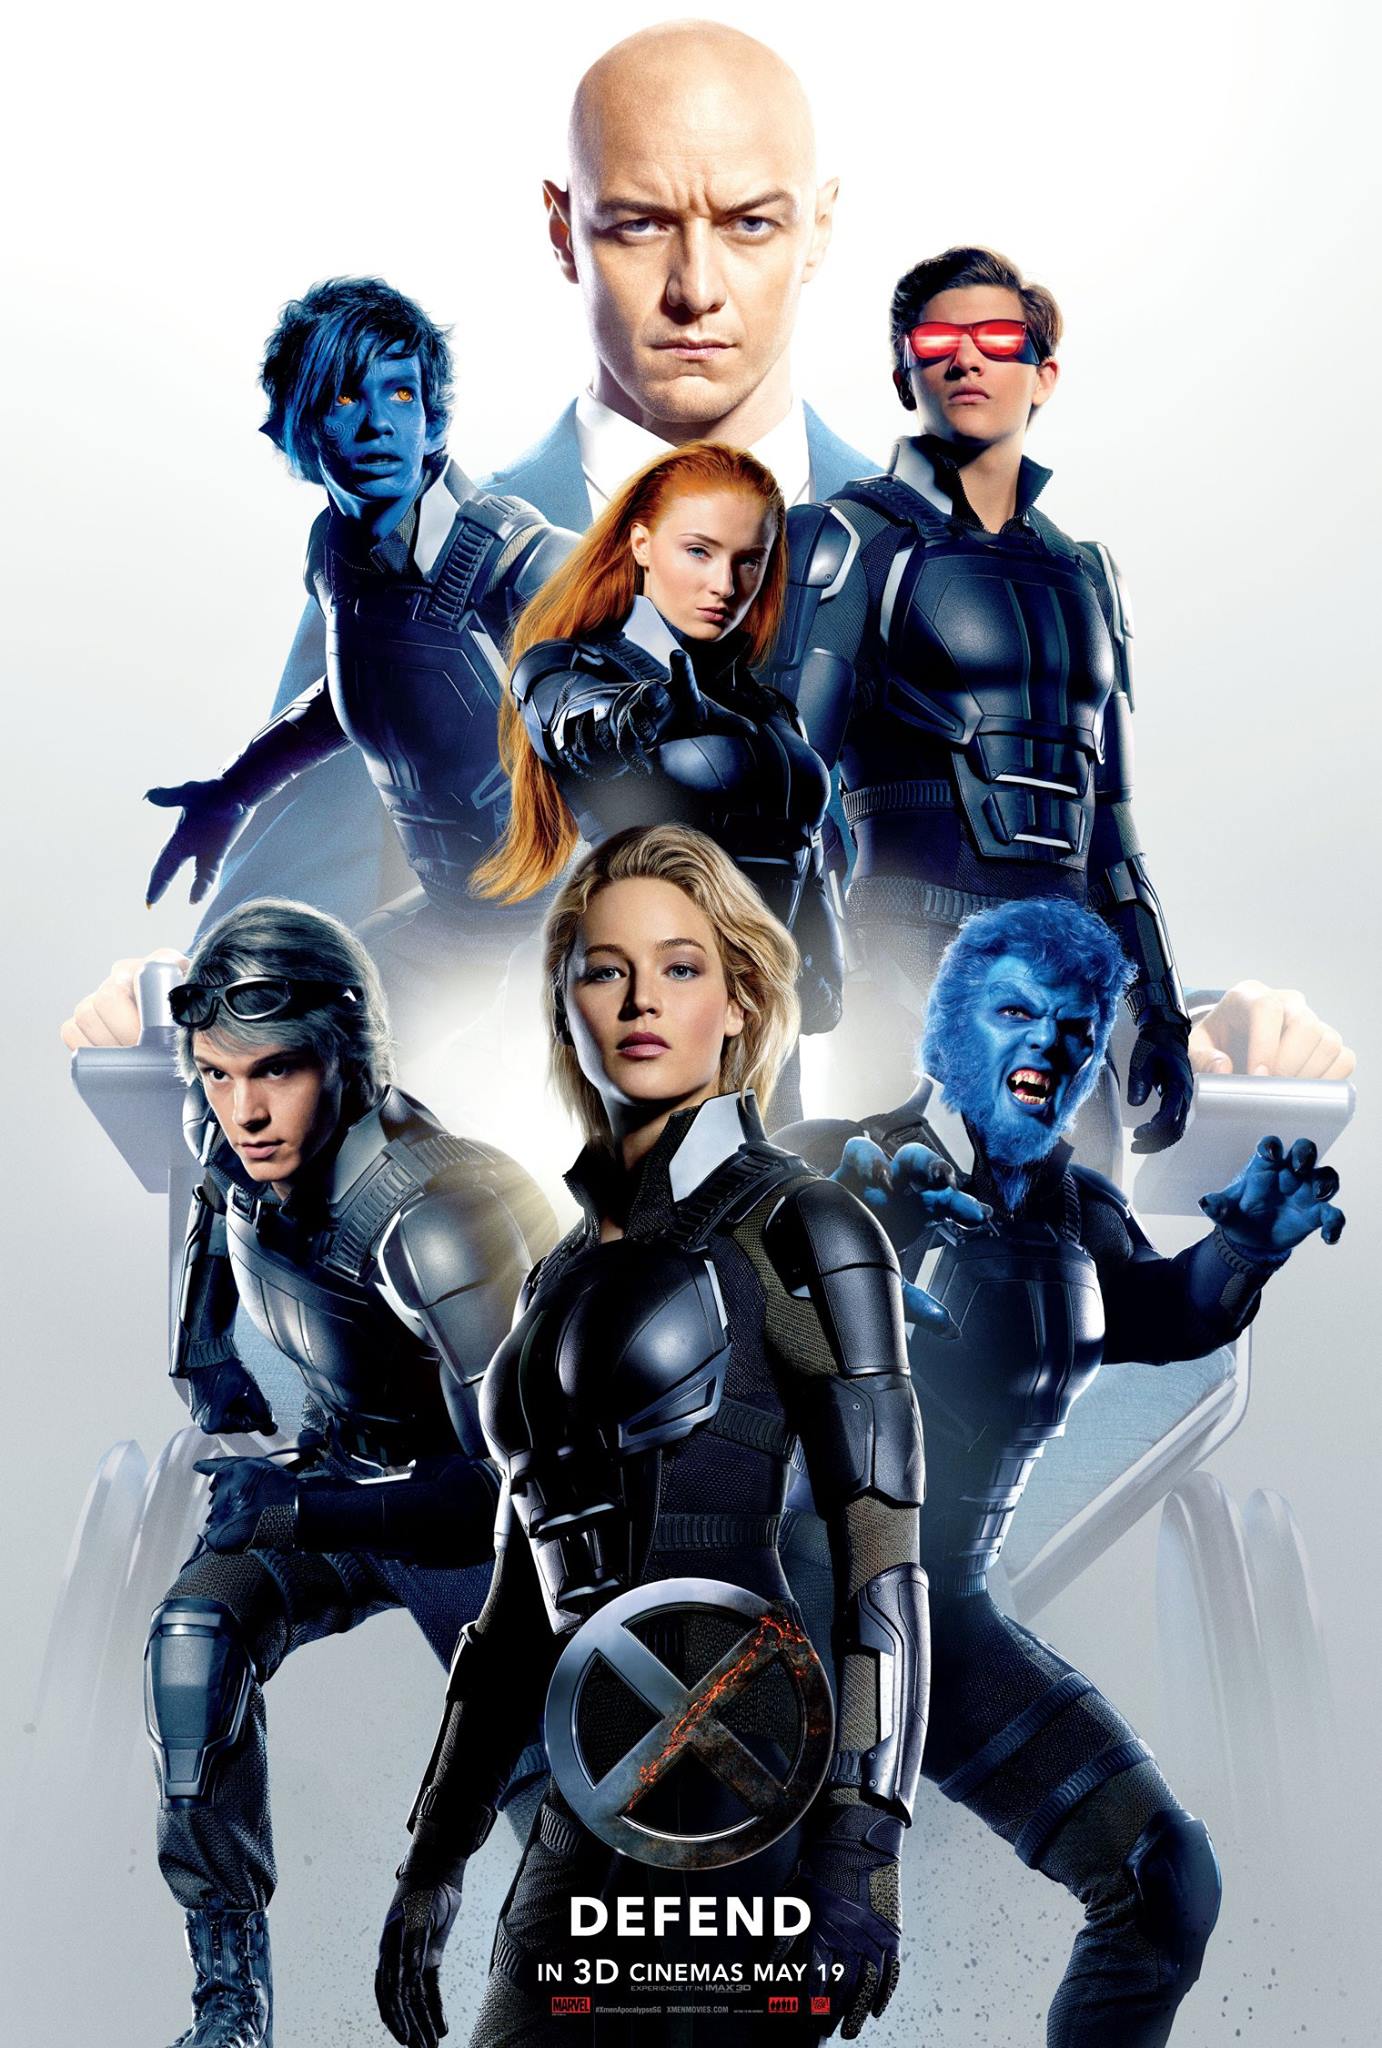 Poster for “X-Men: Apocalypse.” (20th Century Fox)